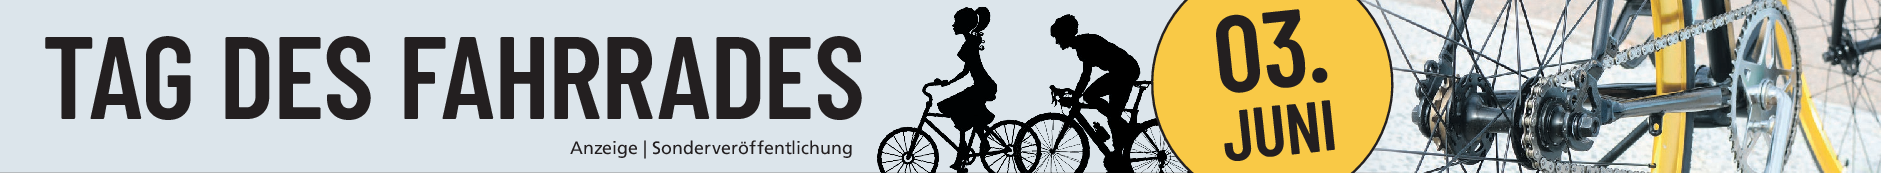 Welttag des Fahrrades am 3. Juni: Drei Dinge auf einmal